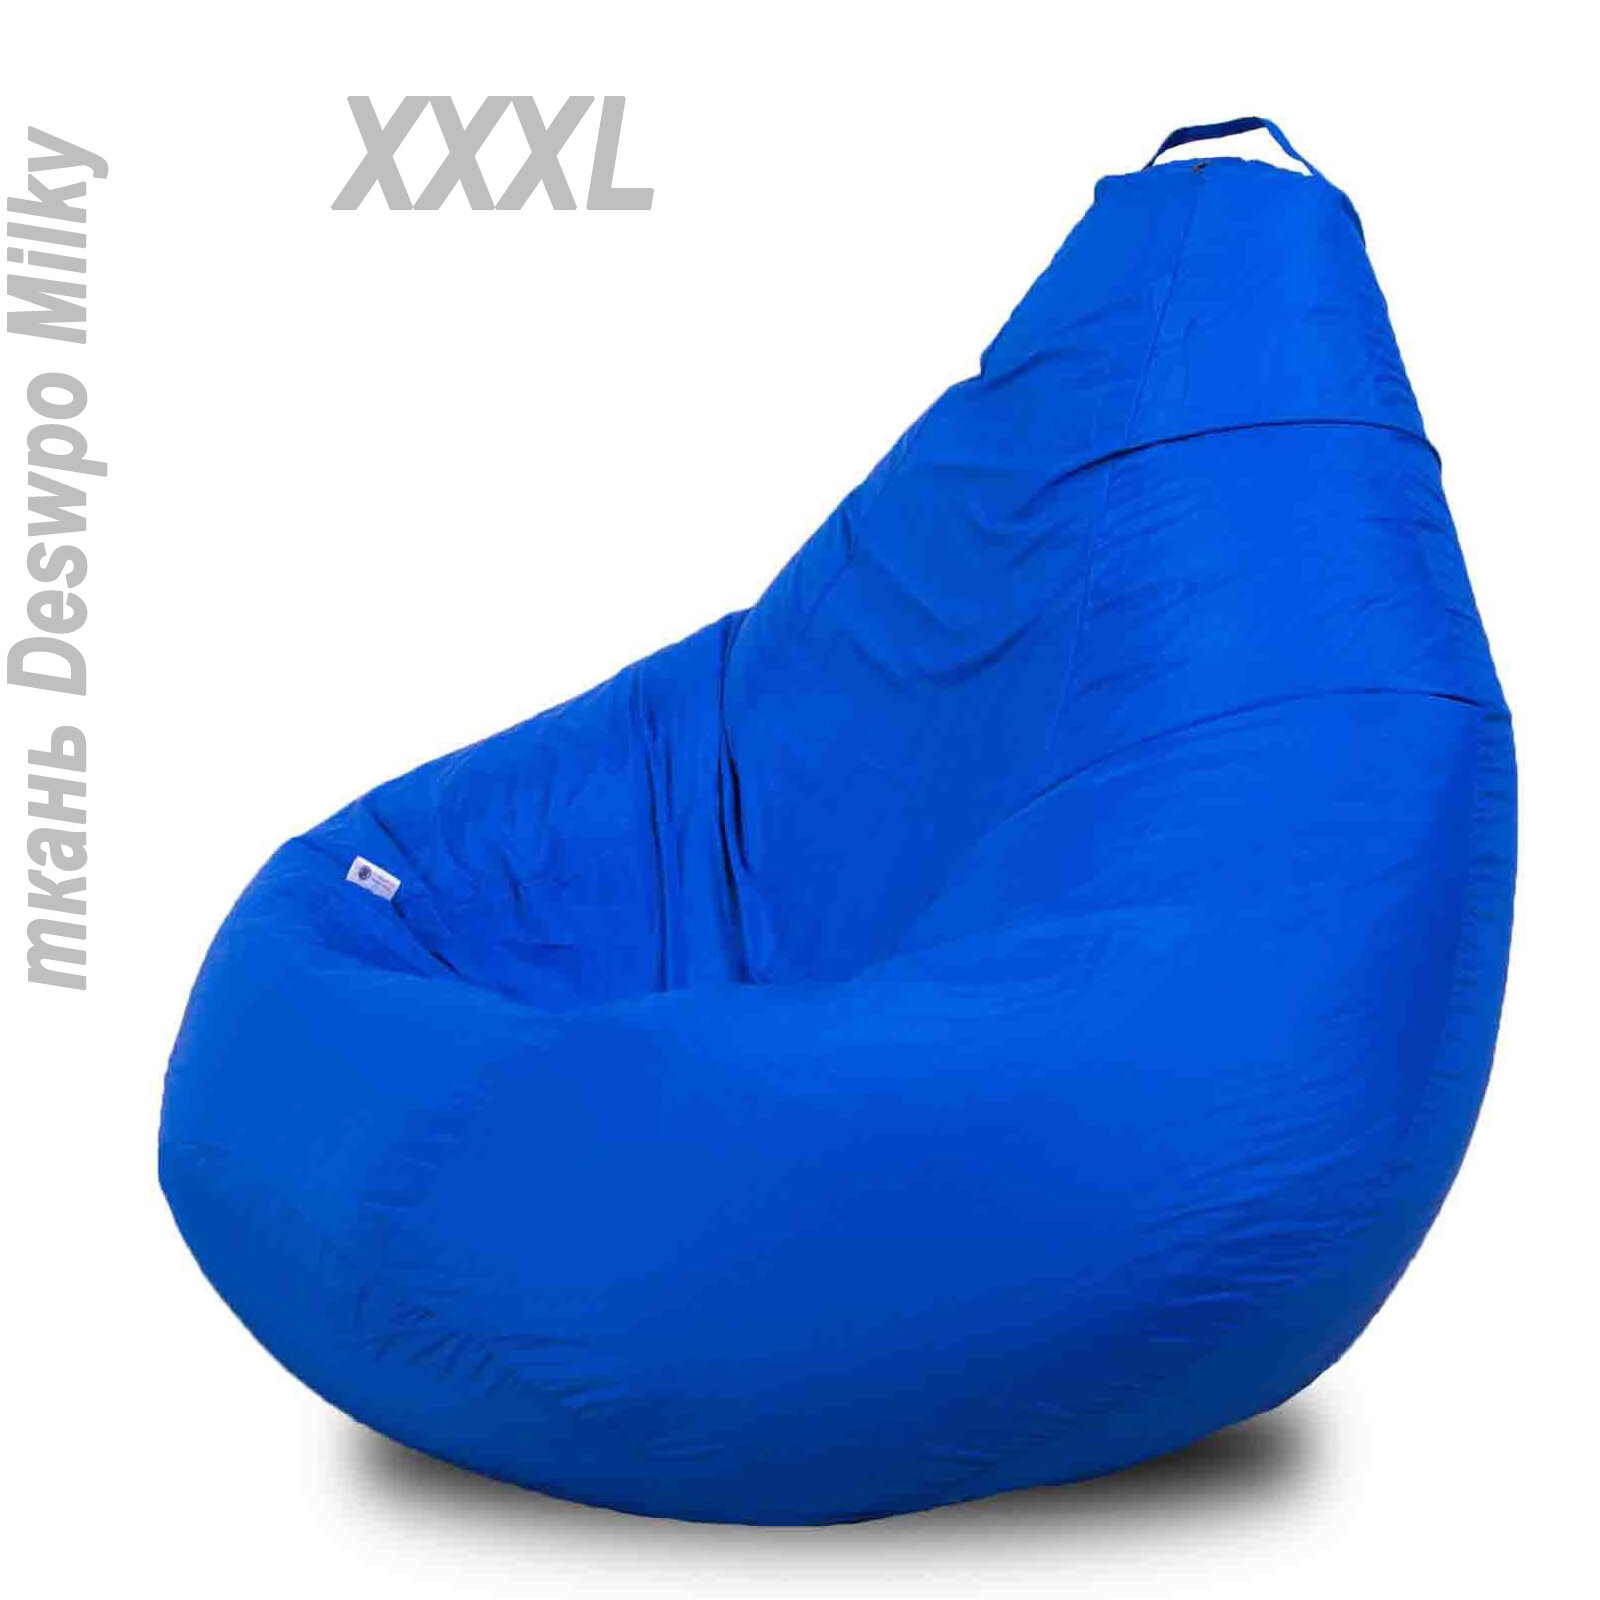 Синее кресло-мешок Размер XXXL (95-135см) форма груша, для взрослого Синий цвет ответственности и стабильности